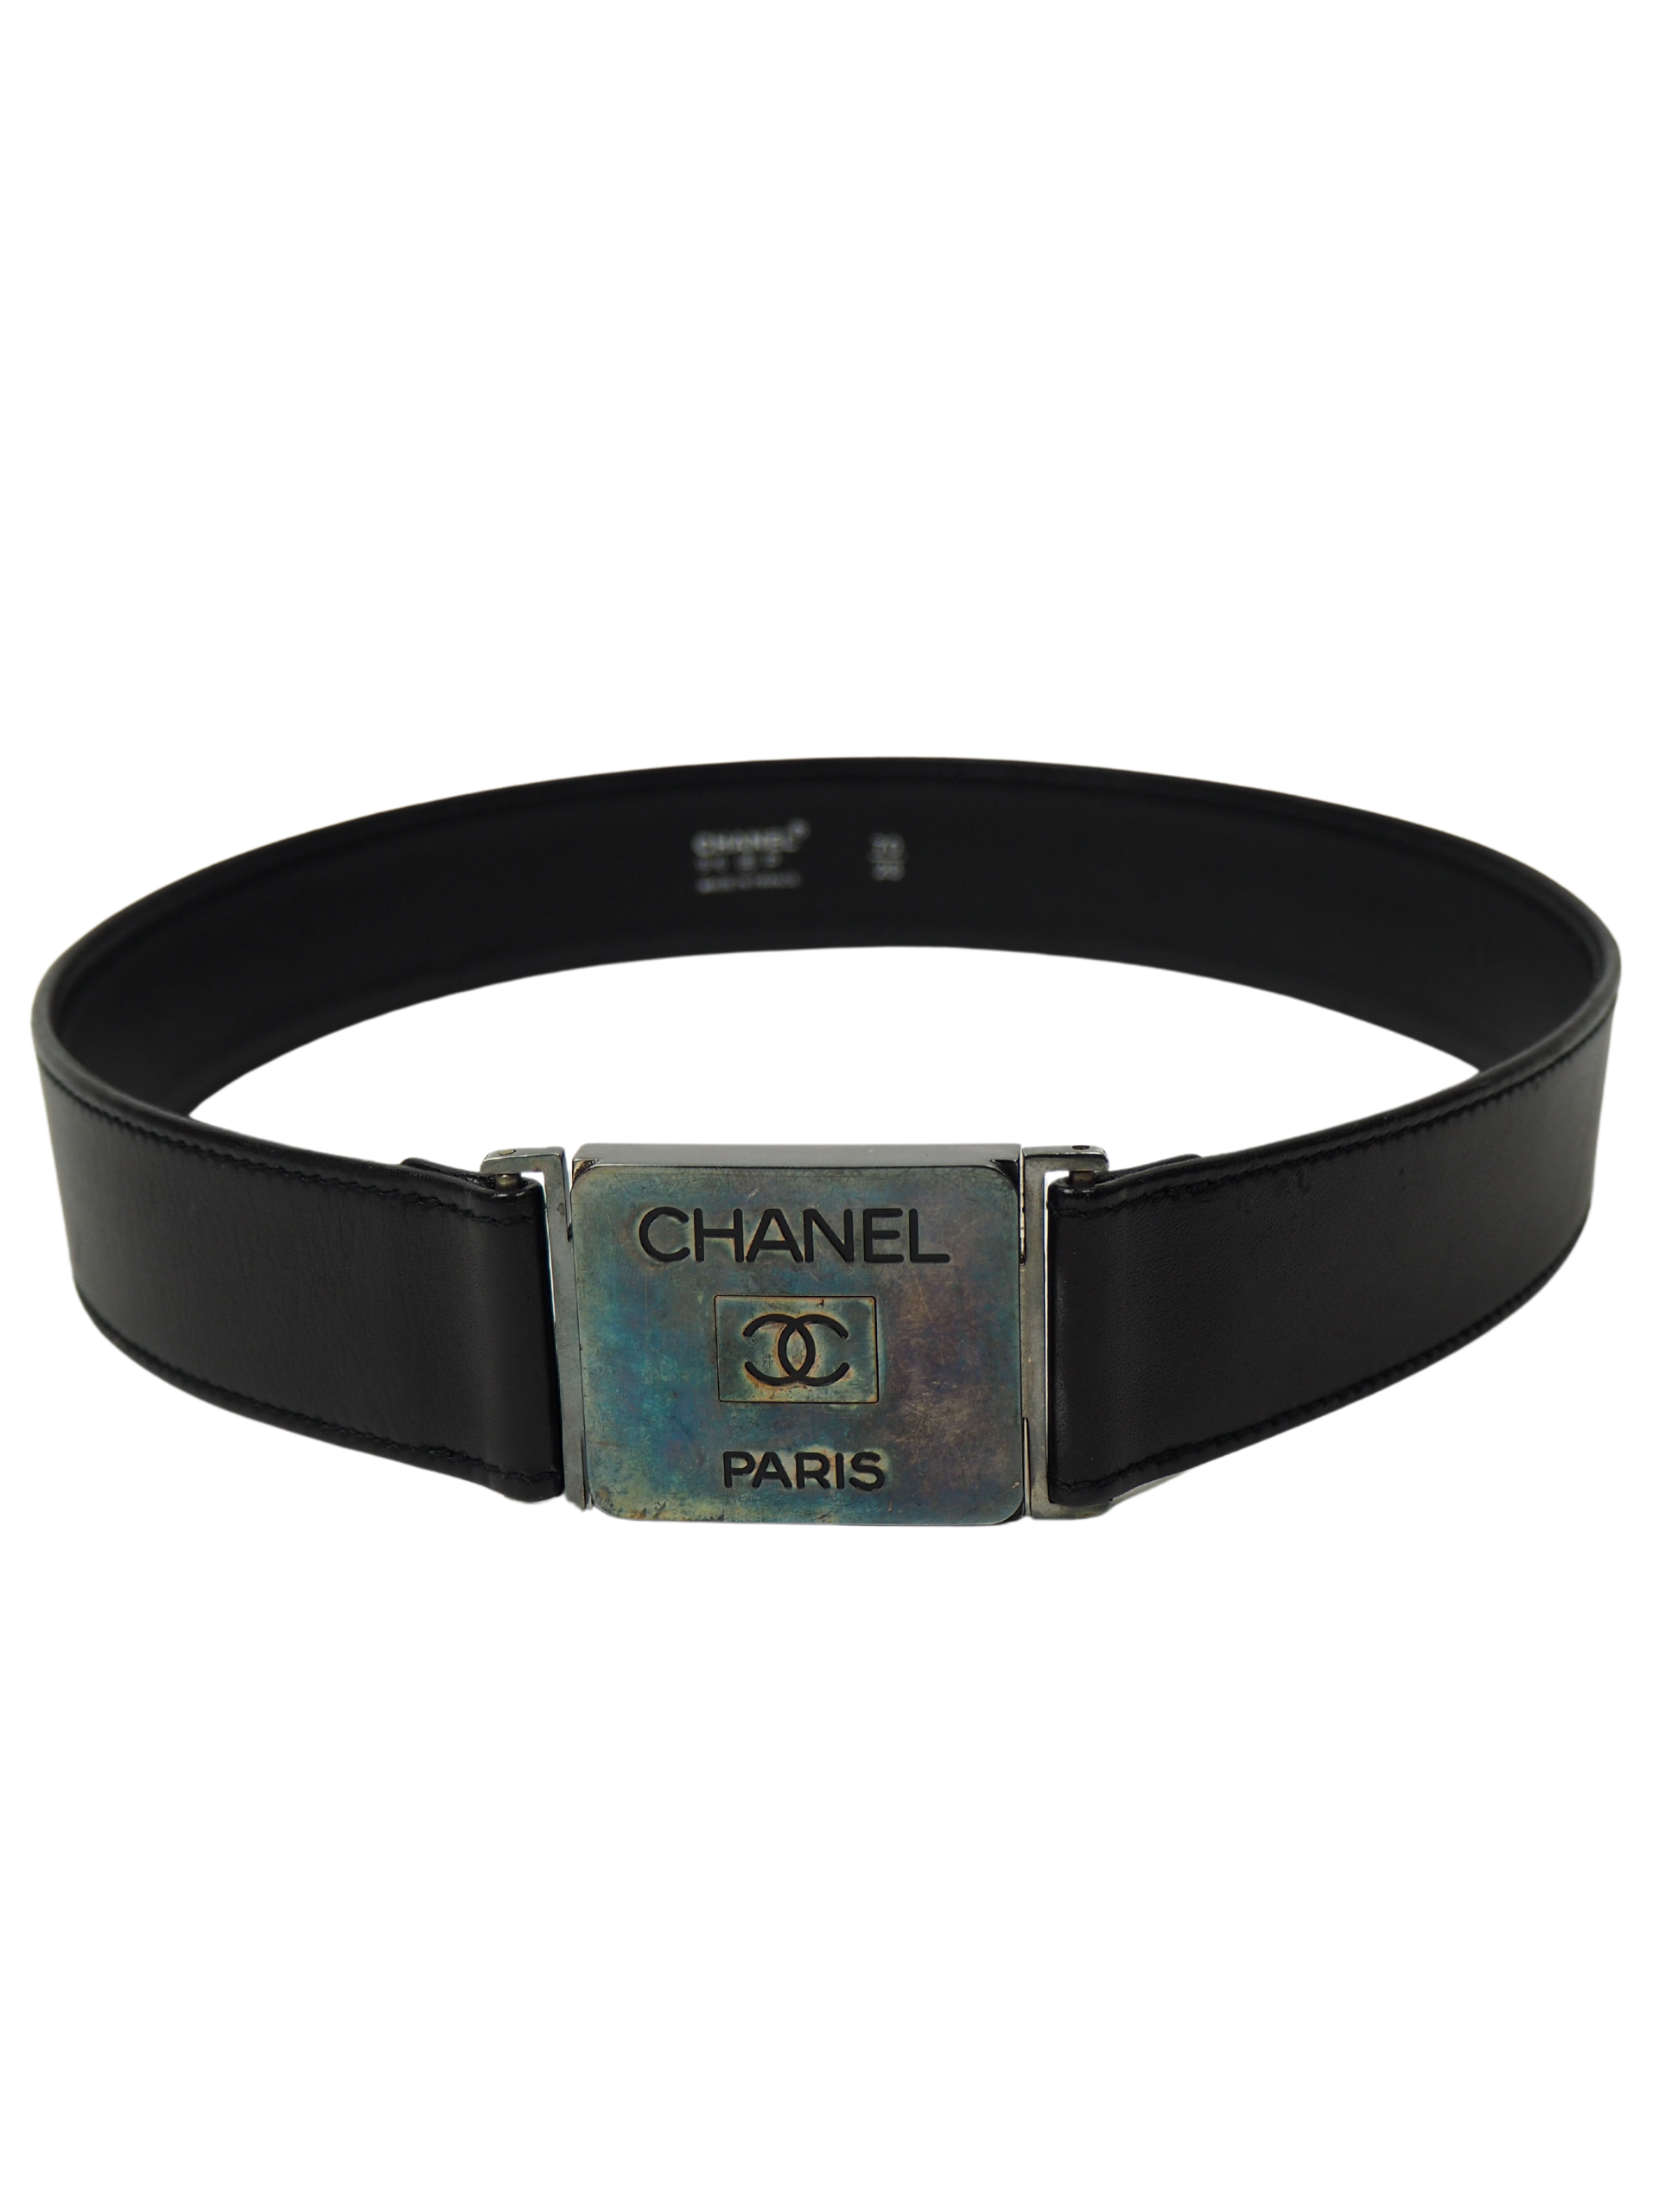 Chanel Black Leather Belt Size 70 – Luxeparel